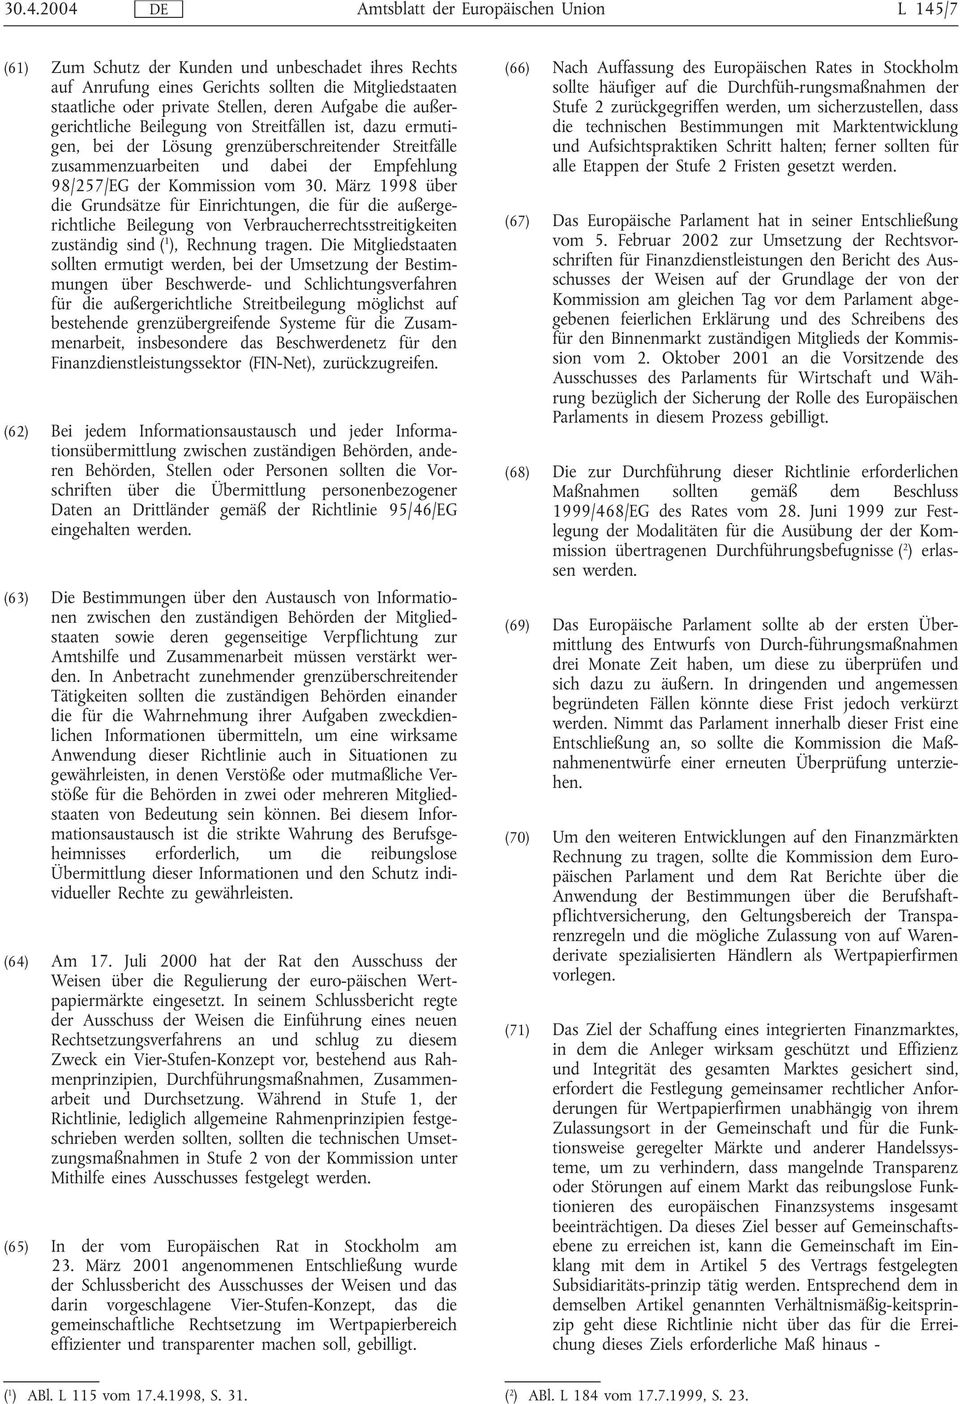 Kommission vom 30. März 1998 über die Grundsätze für Einrichtungen, die für die außergerichtliche Beilegung von Verbraucherrechtsstreitigkeiten zuständig sind ( 1 ), Rechnung tragen.